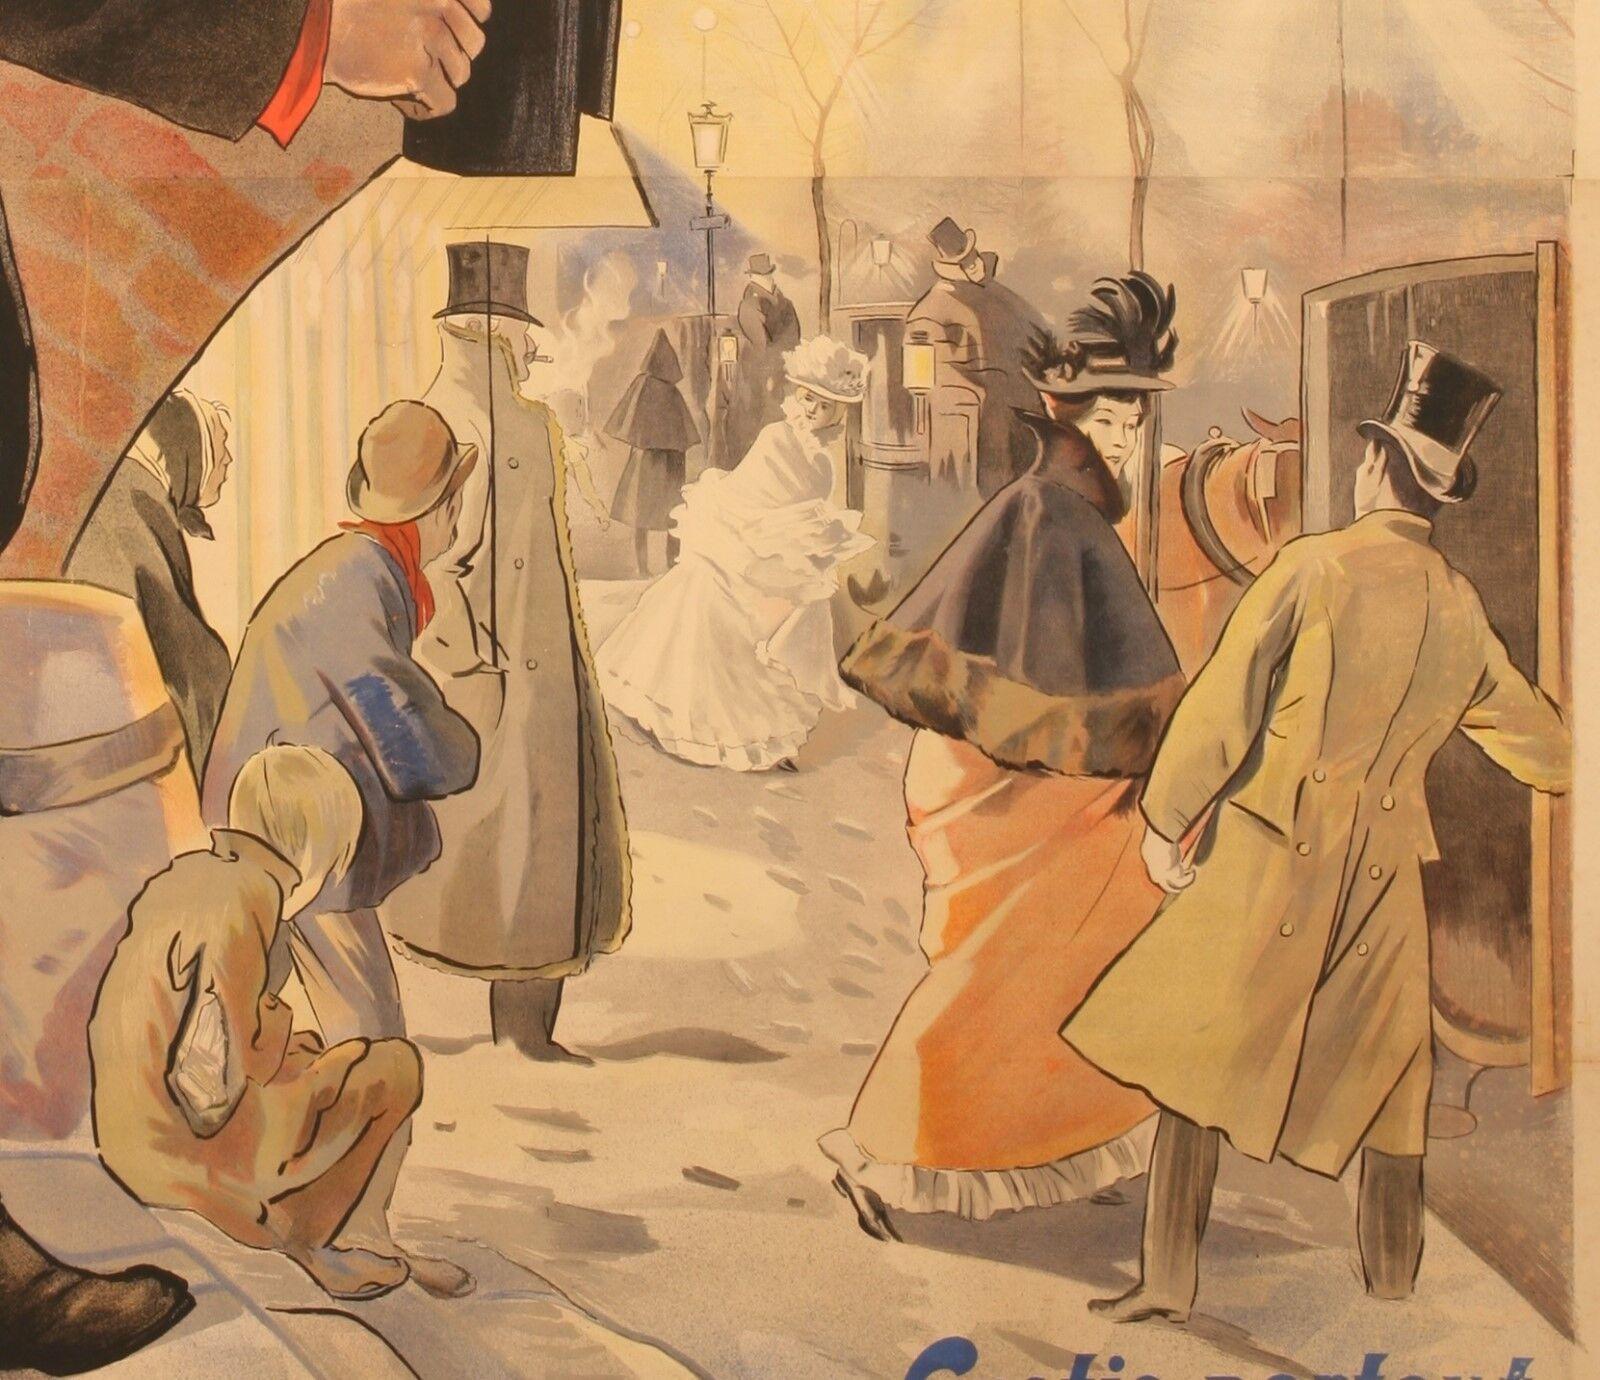 Art Nouveau Original Vintage Poster-Bas funds of Paris-Aristide Bruant-Lautrec, 1895 For Sale